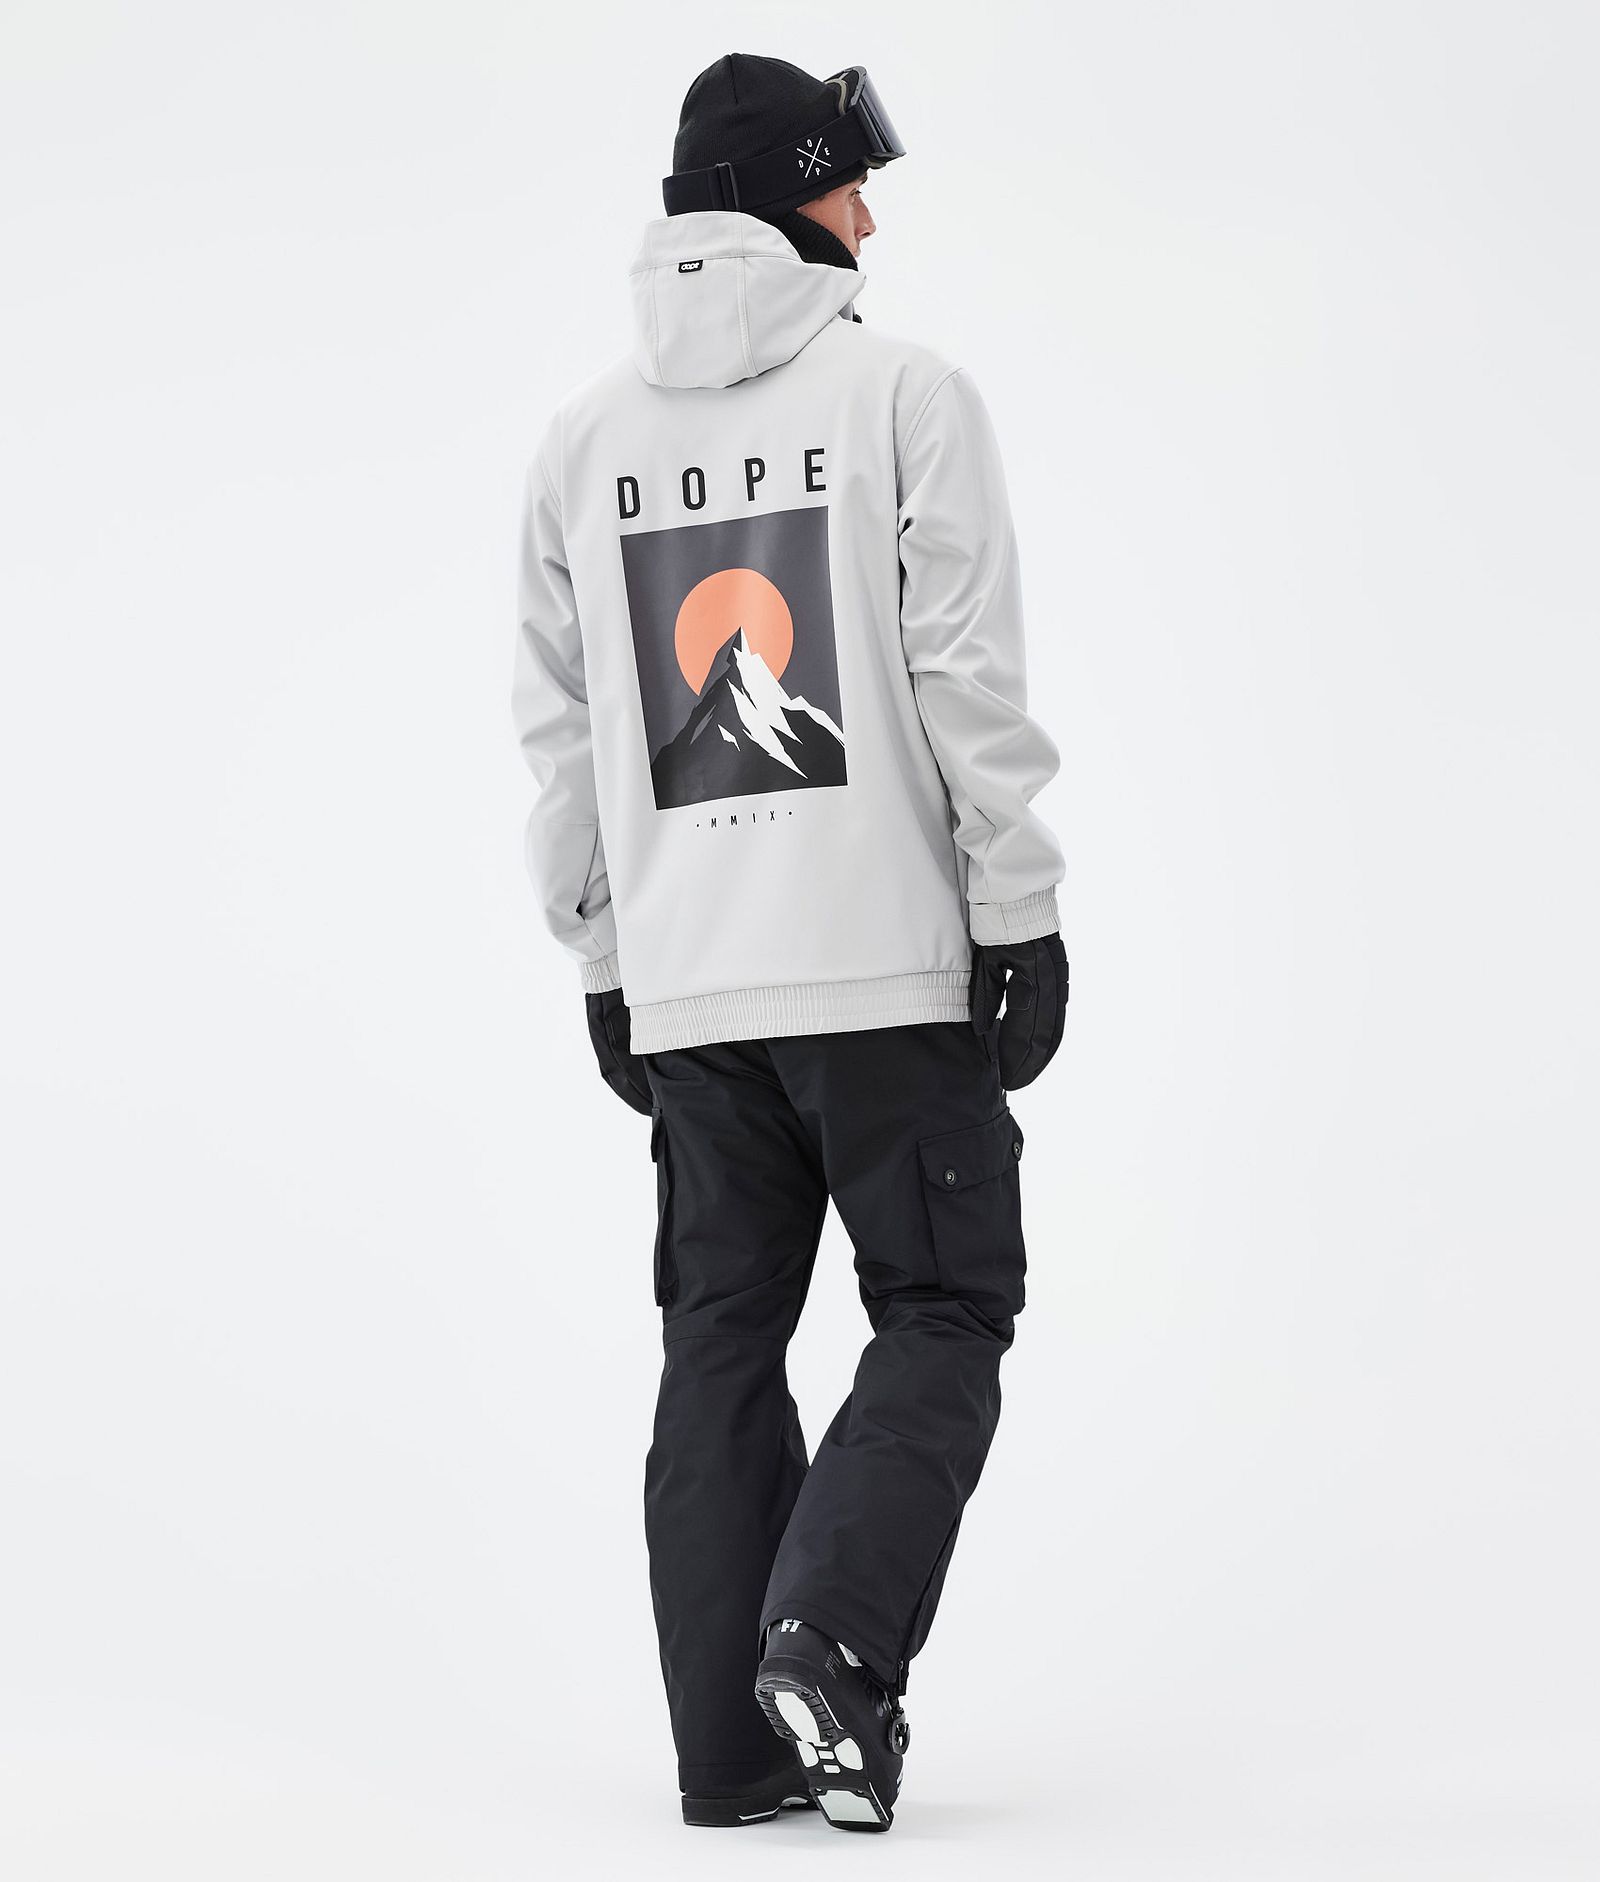 Dope Yeti Outfit de Esquí Hombre Light Grey/Blackout